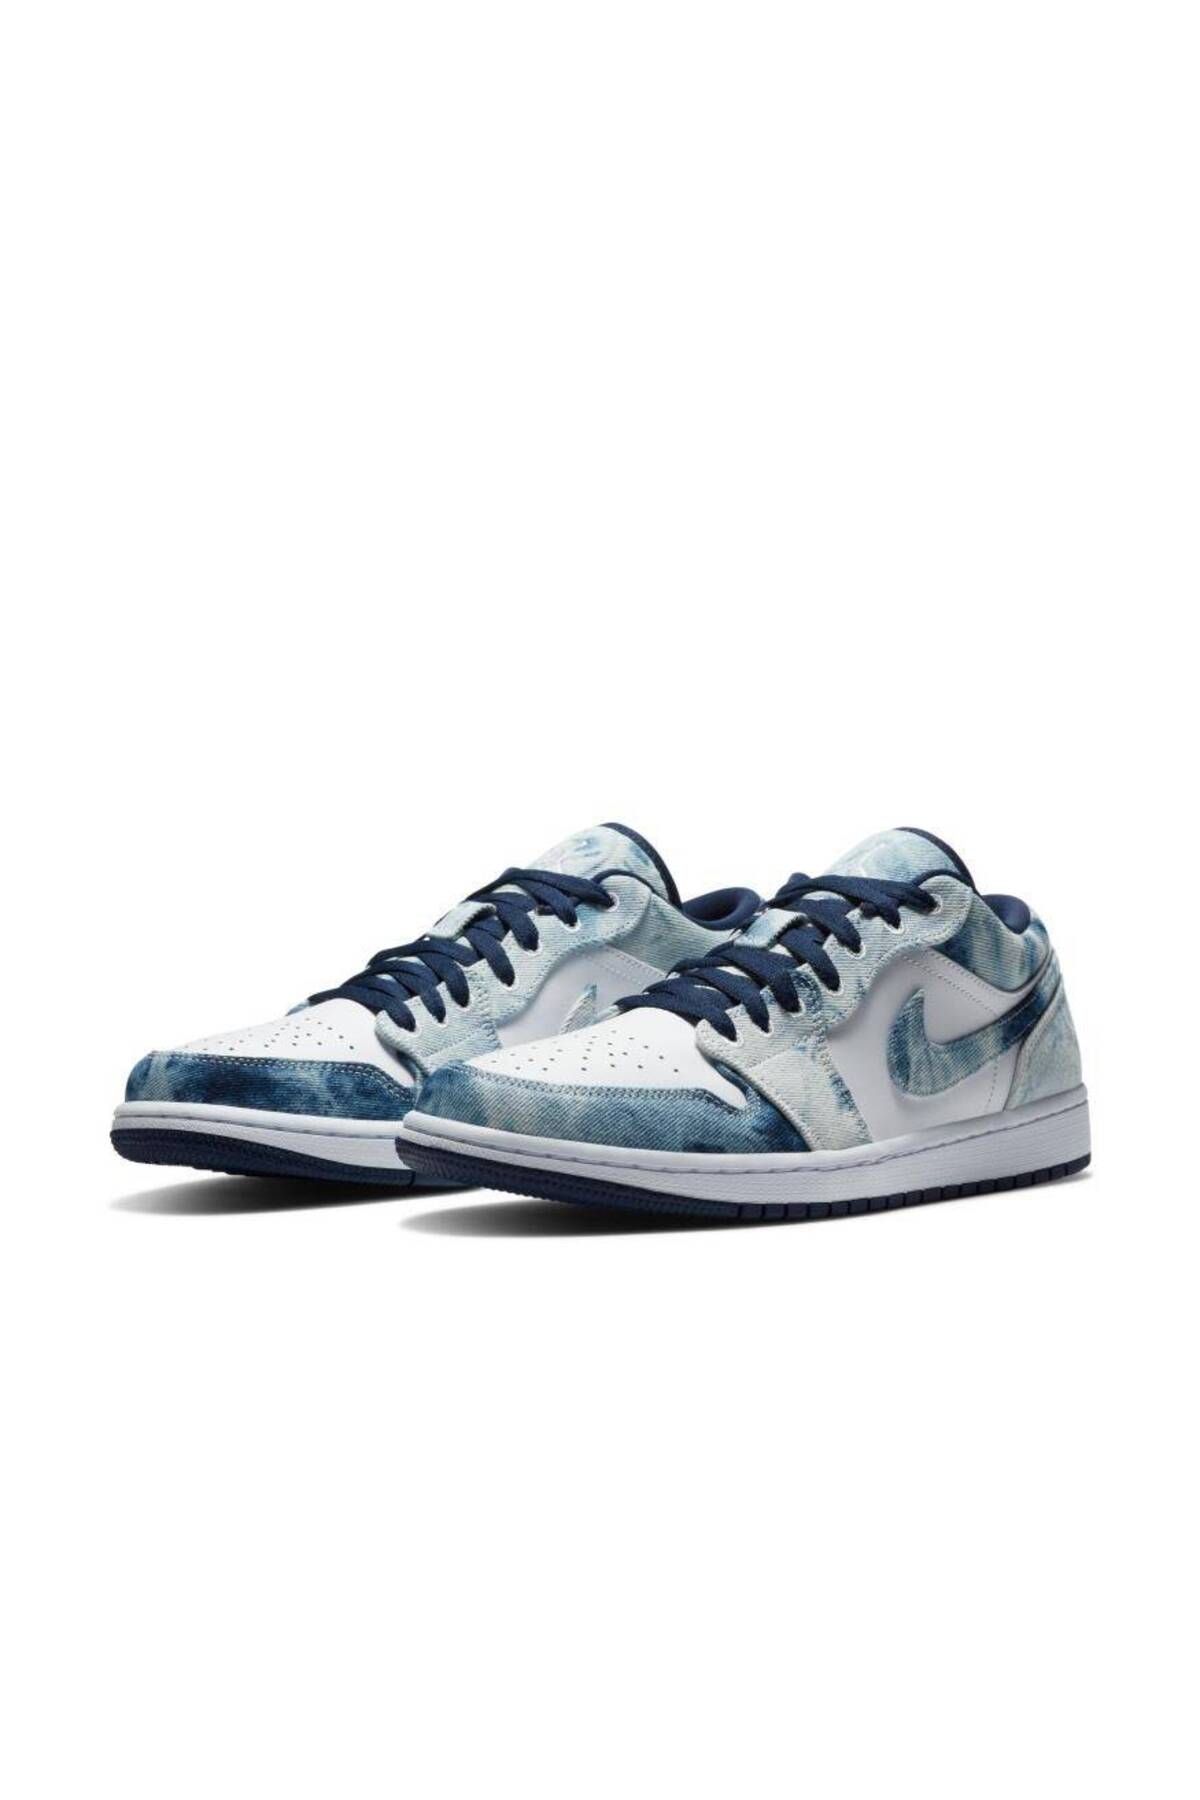 Nike Air Jordan 1 Low SE Erkek Mavi/Beyaz Renk Basketbol Ayakkabısı